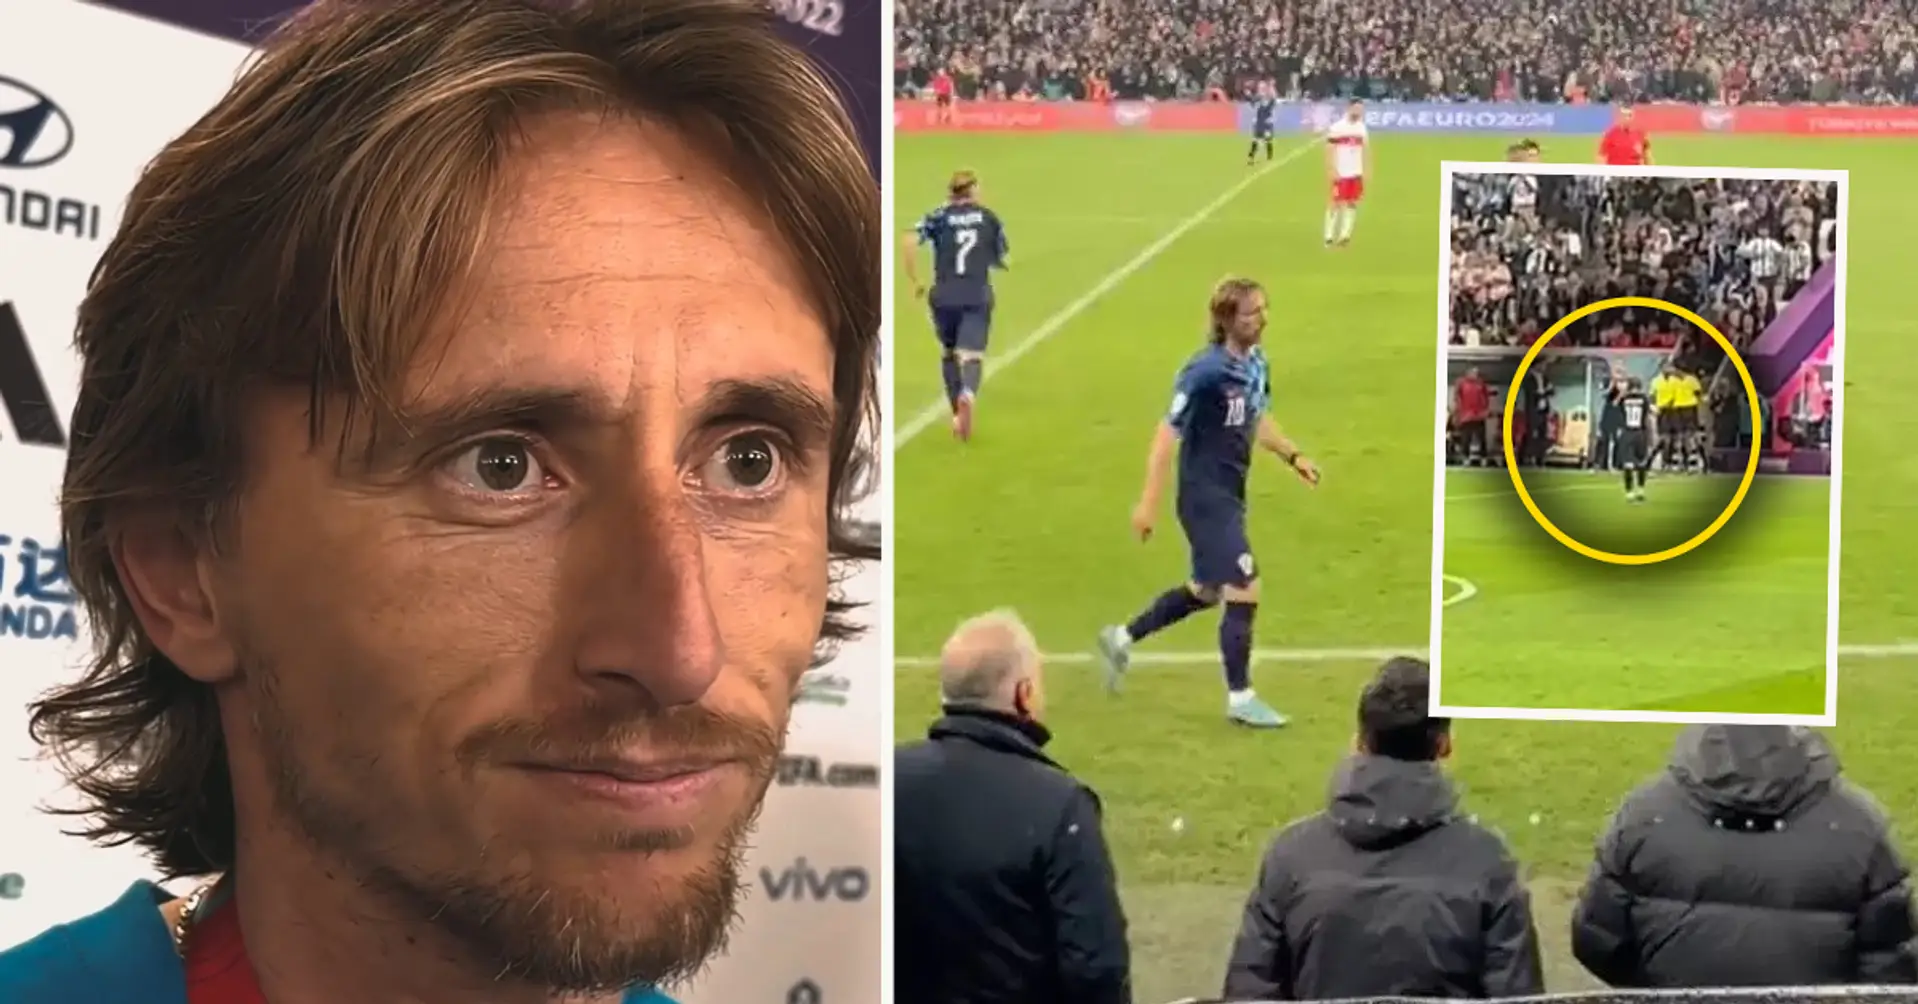 Das Herz eines Champions: Moment mit Modric nach dem Sieg gegen die Türkei - der Kroate erhielt stehende Ovationen, als er vom Spielfeld ging 